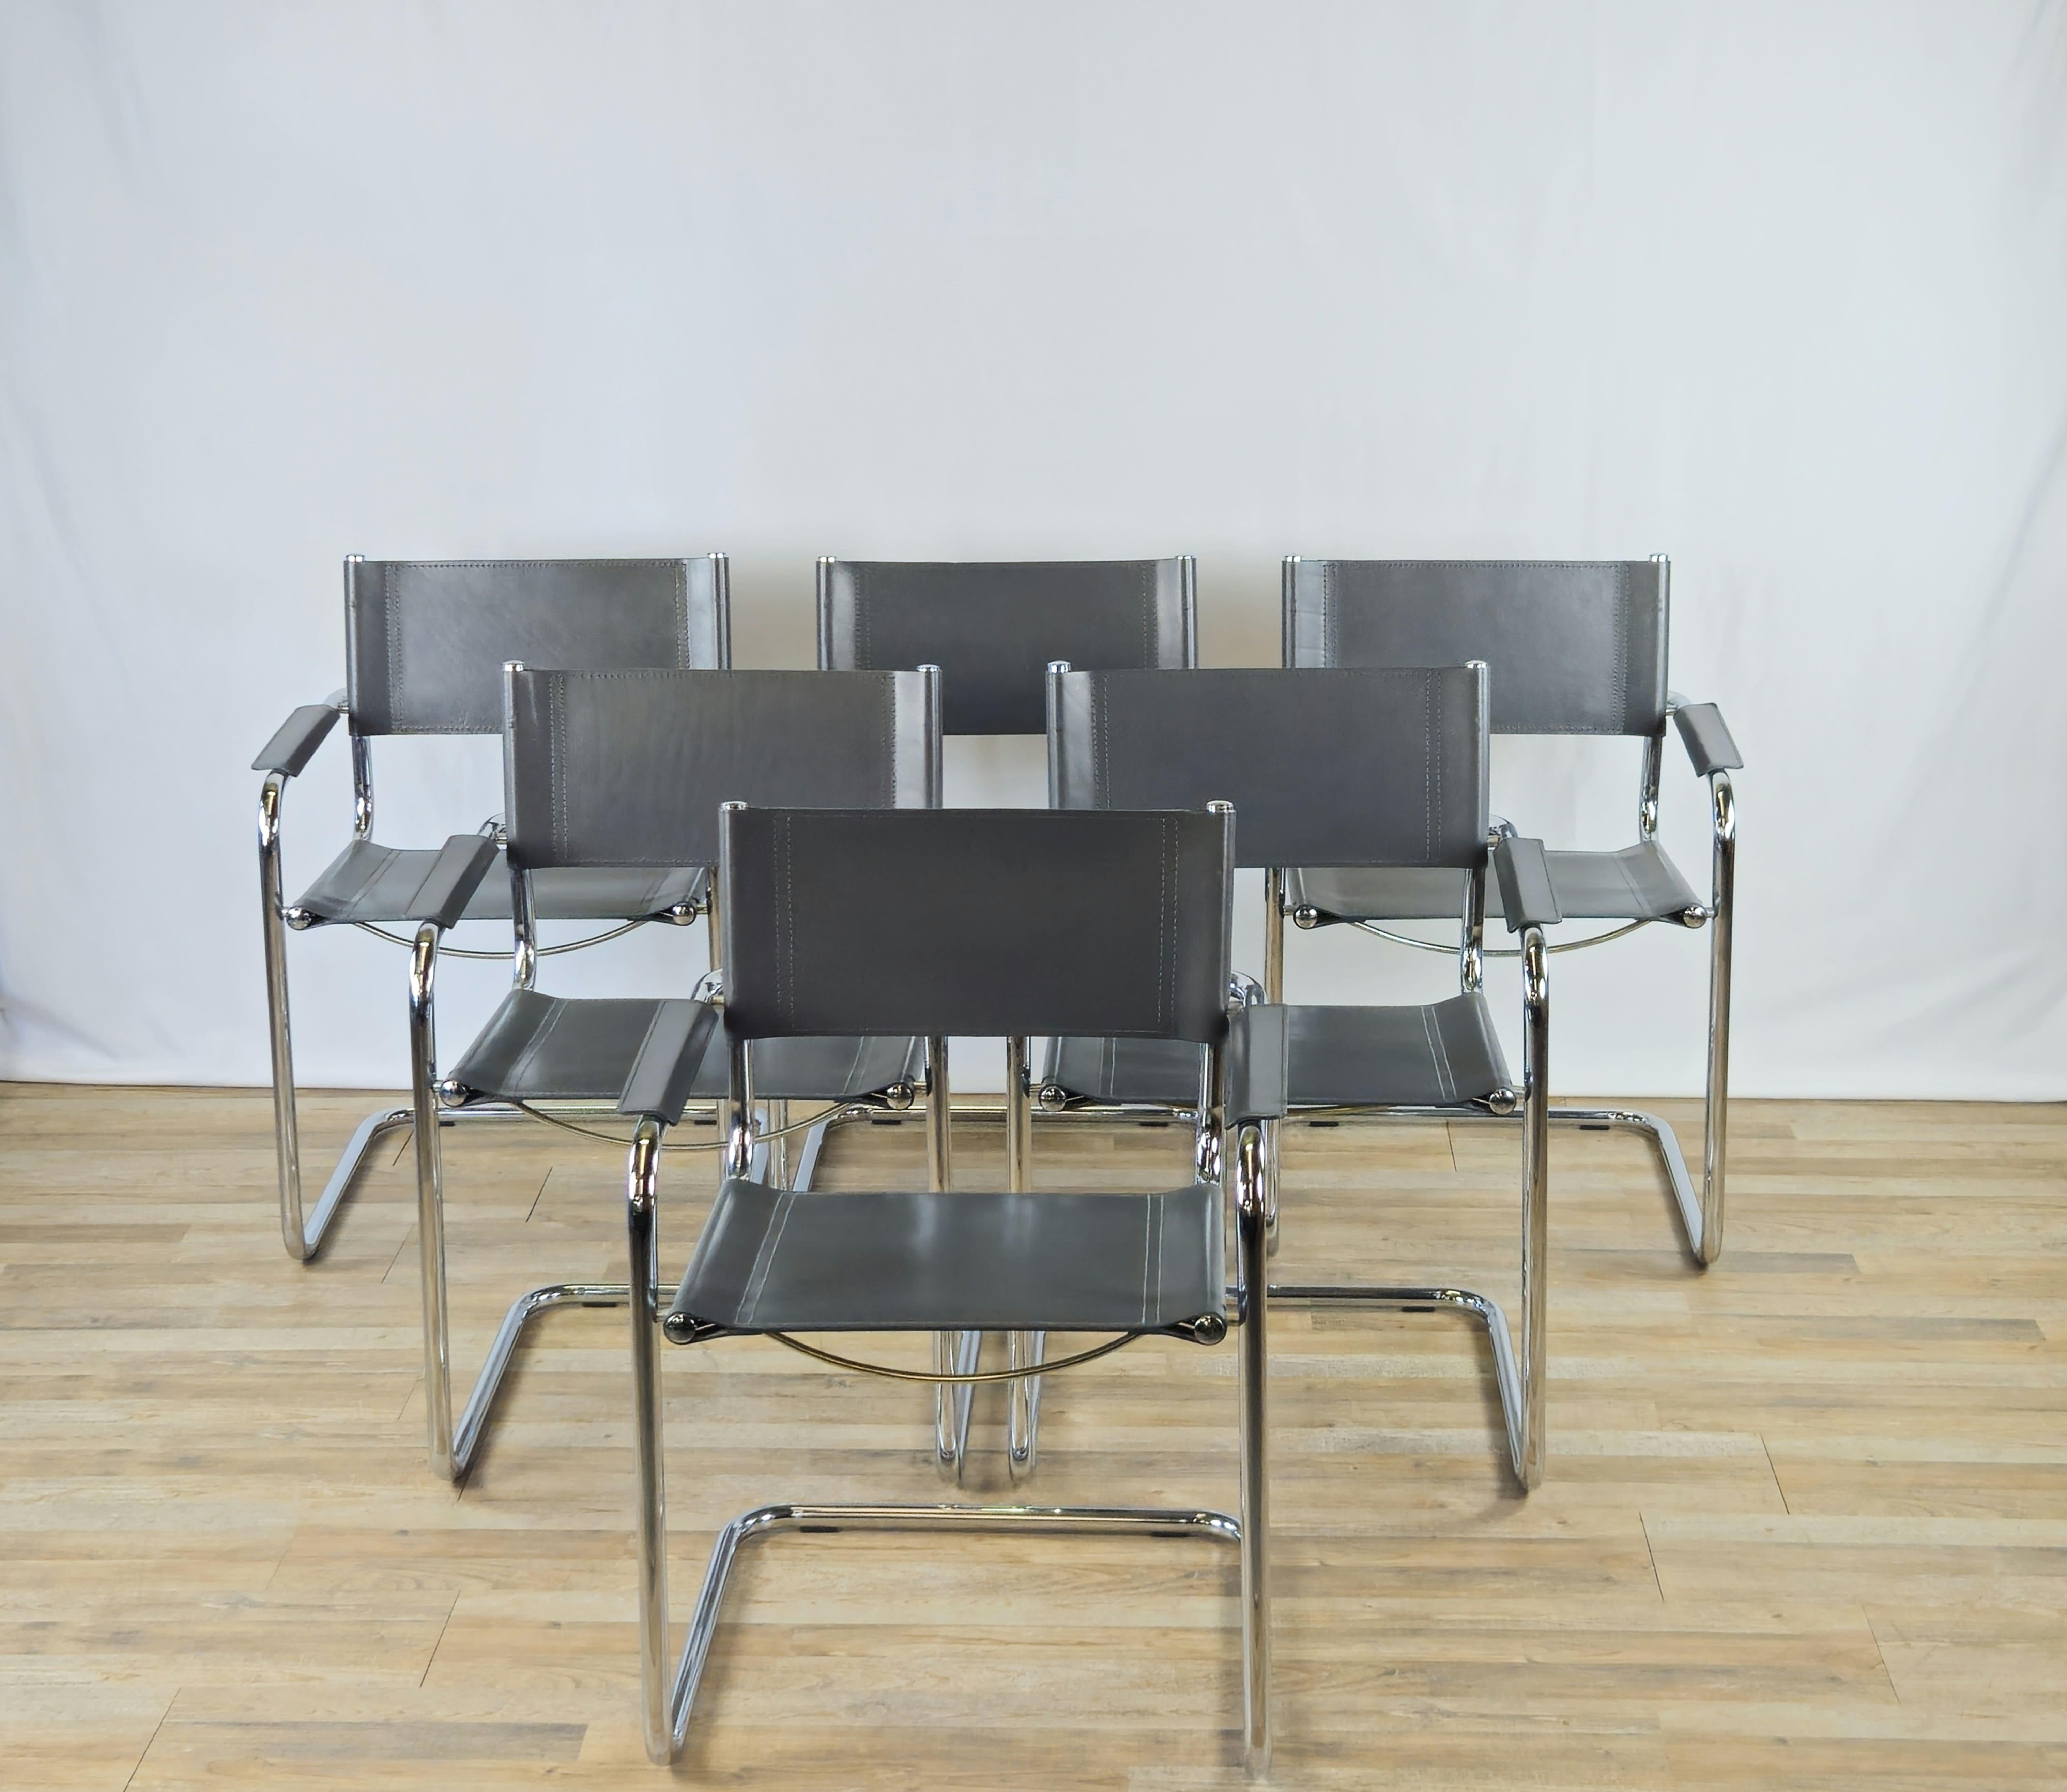 Icônes du design des années 1970, cet ensemble fauteuil/chaise Bauhaus se prête parfaitement à tout type d'environnement, du moderne à l'antique.

La structure est en acier tubulaire, tandis que l'assise, le dossier et les accoudoirs sont en